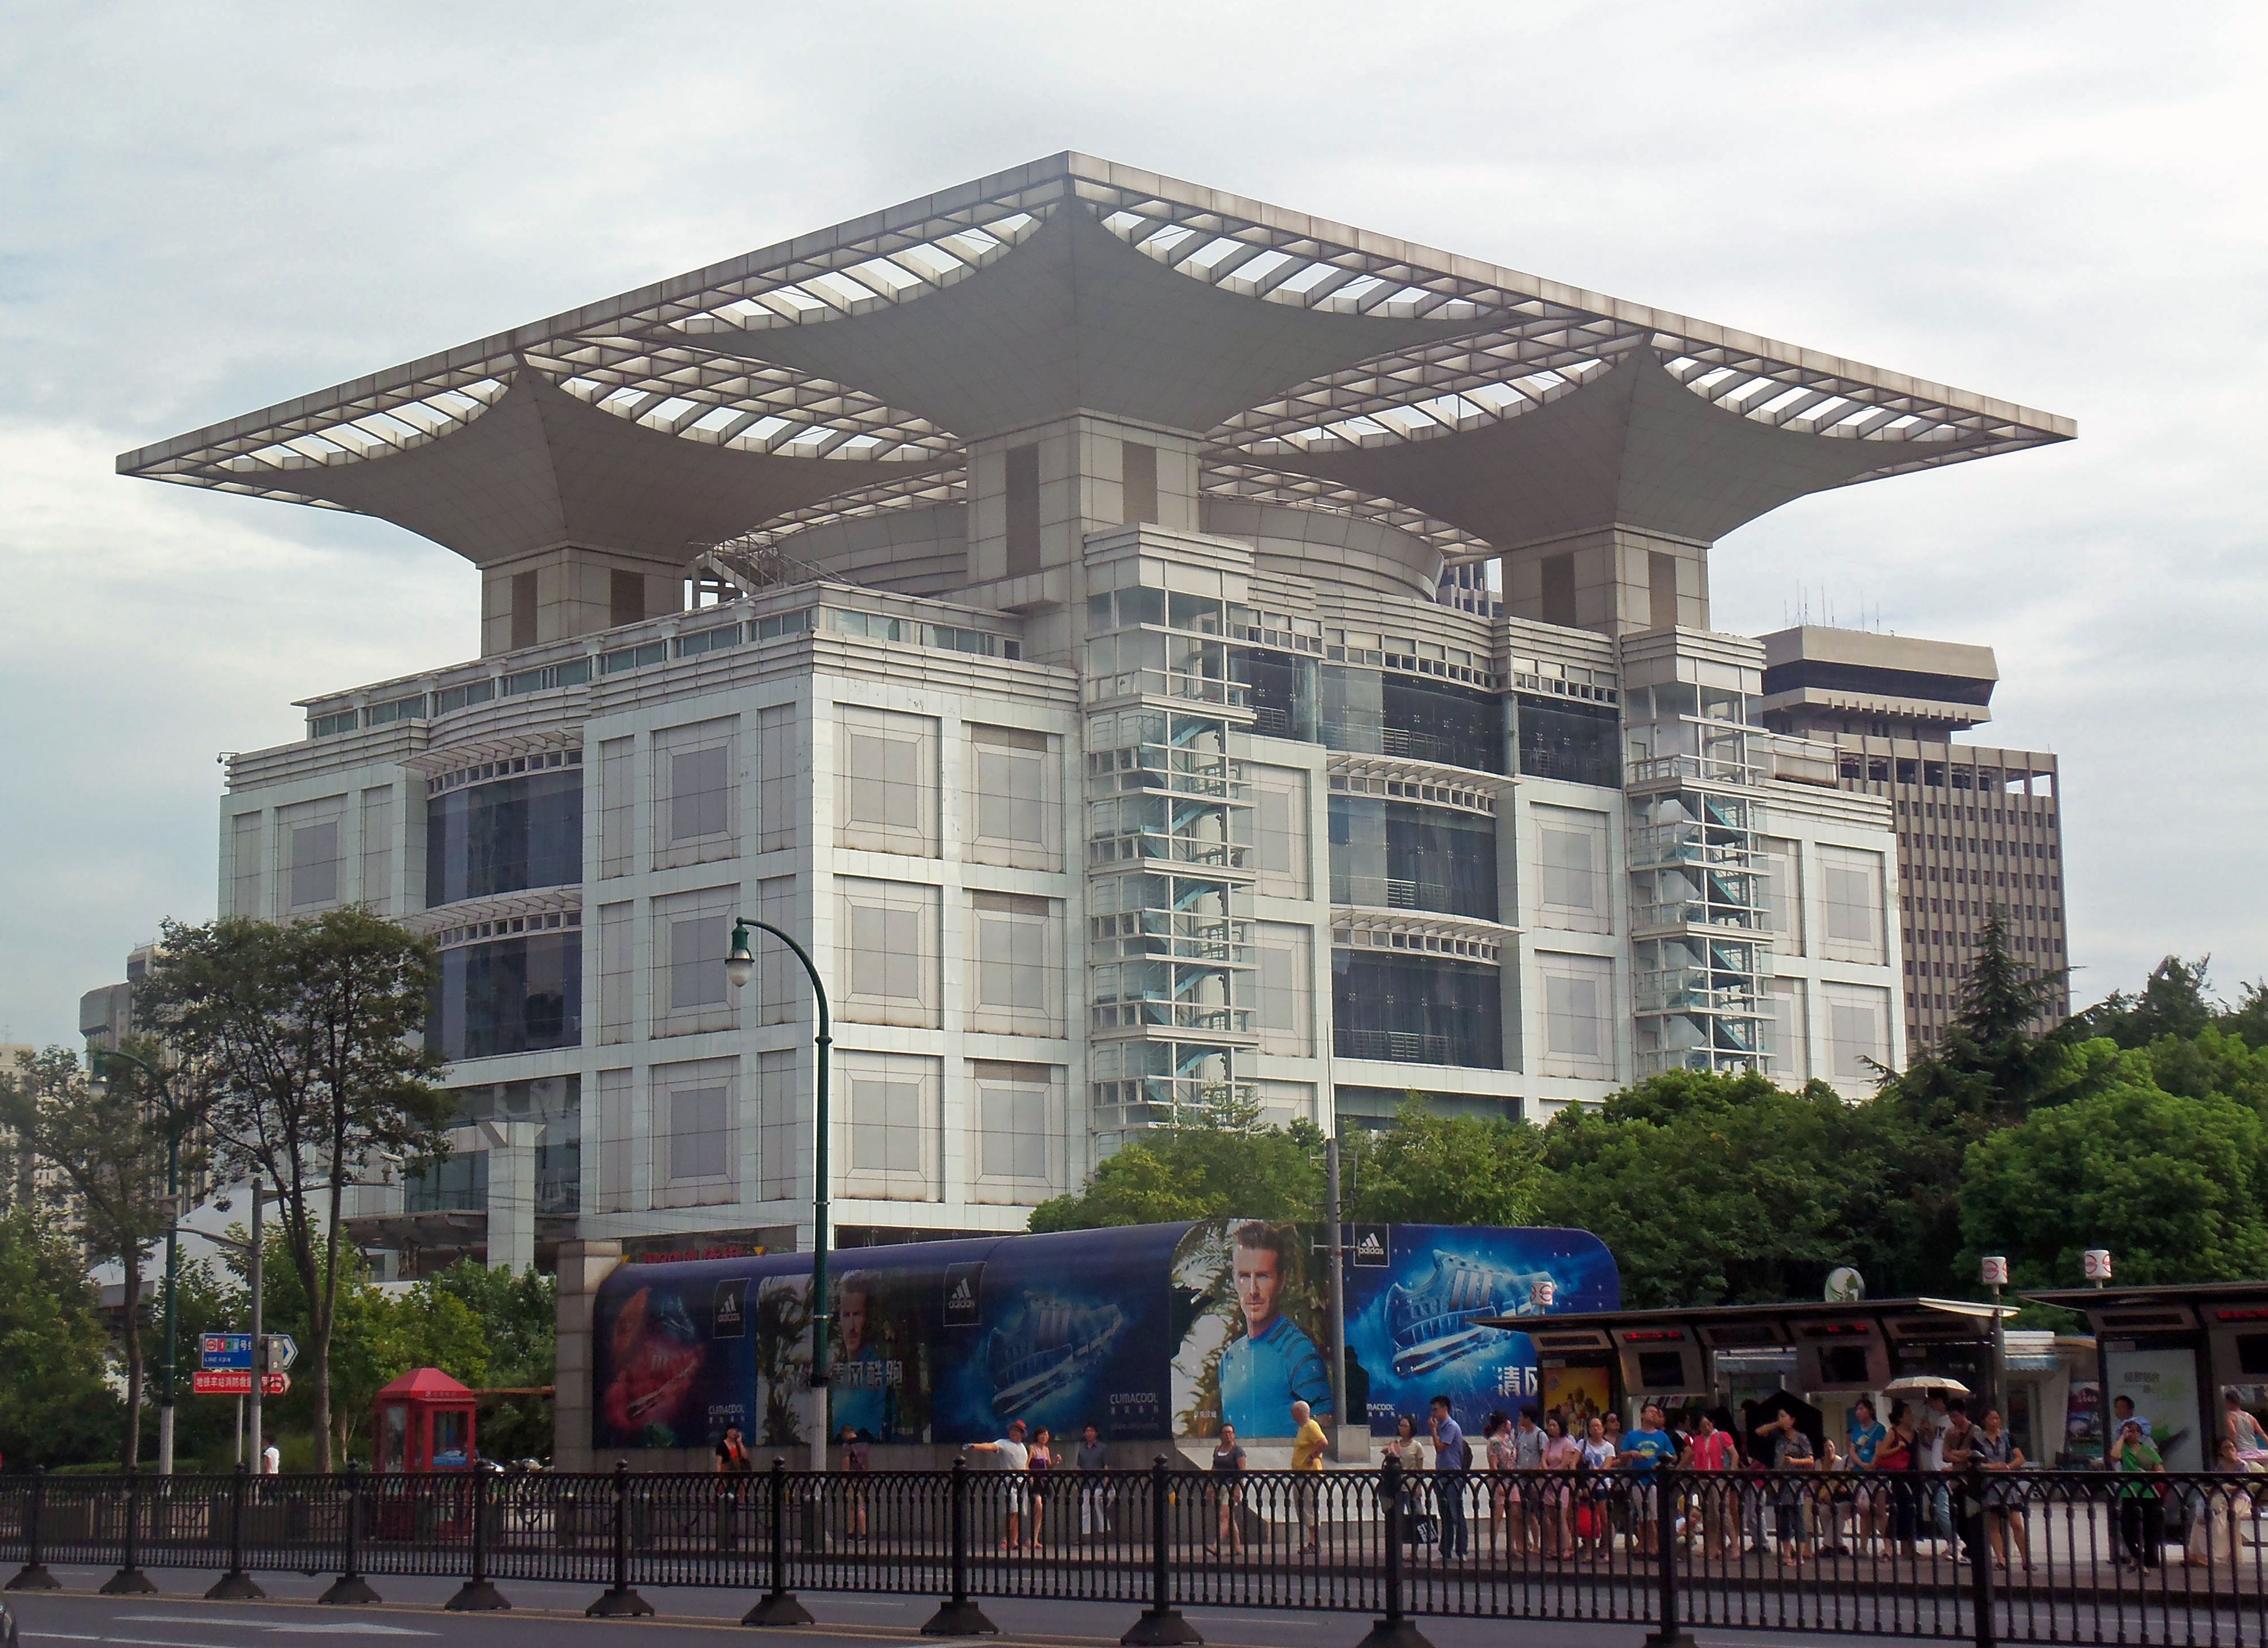 Urban Planning Exhibition Centre